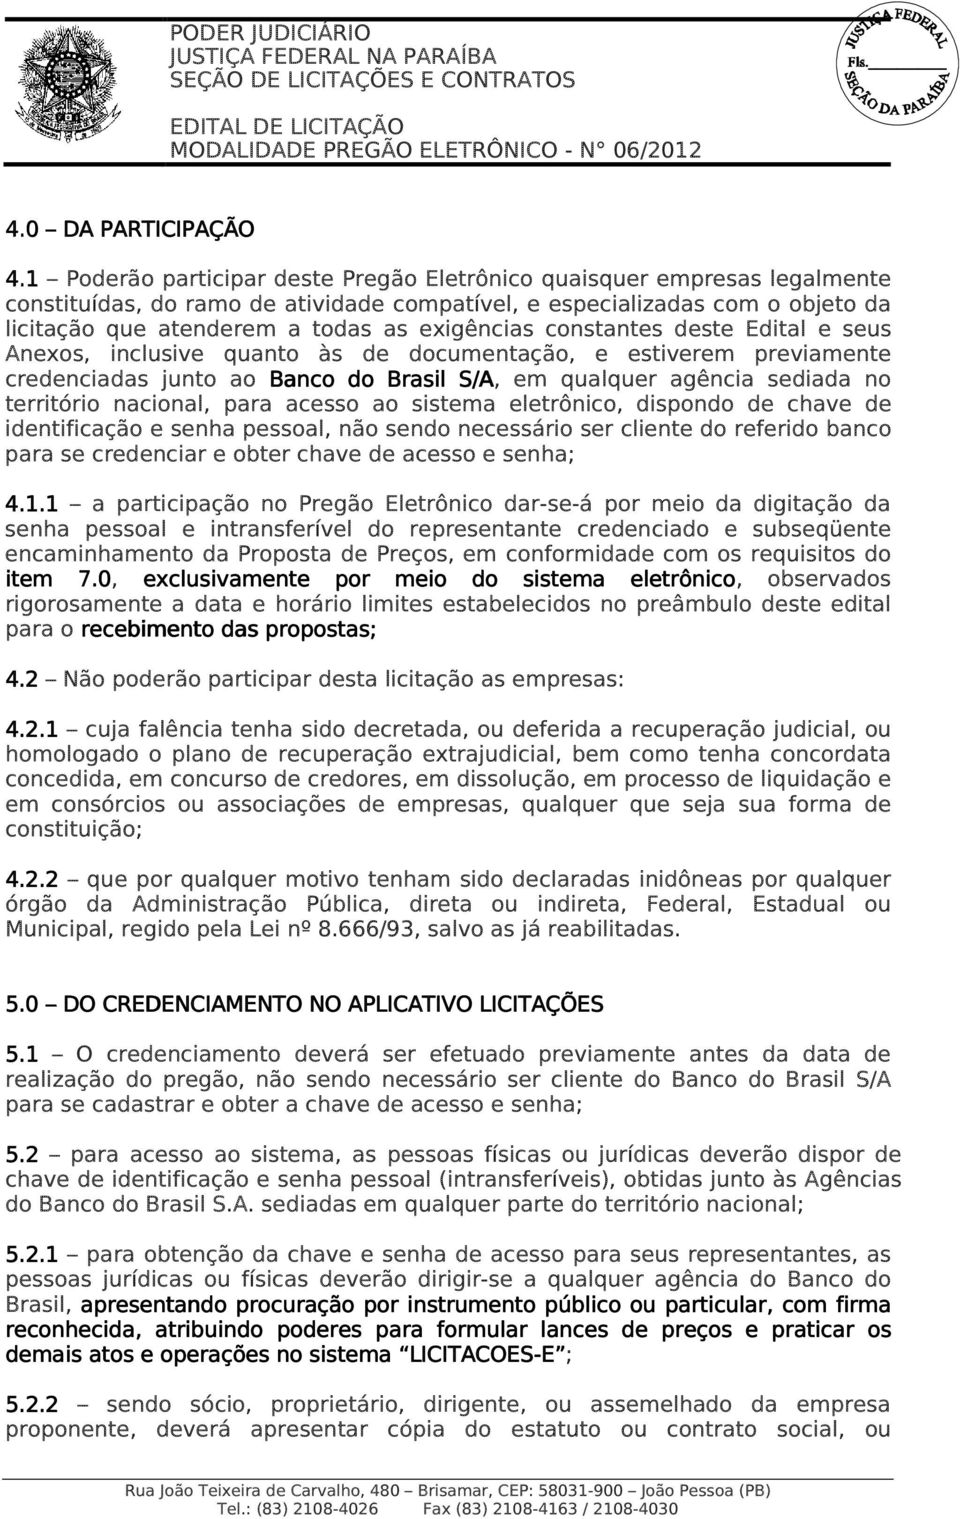 exigências constantes deste Edital e seus Anexos, inclusive quanto às de documentação, e estiverem previamente credenciadas junto ao Banco do Brasil S/A, em qualquer agência sediada no território